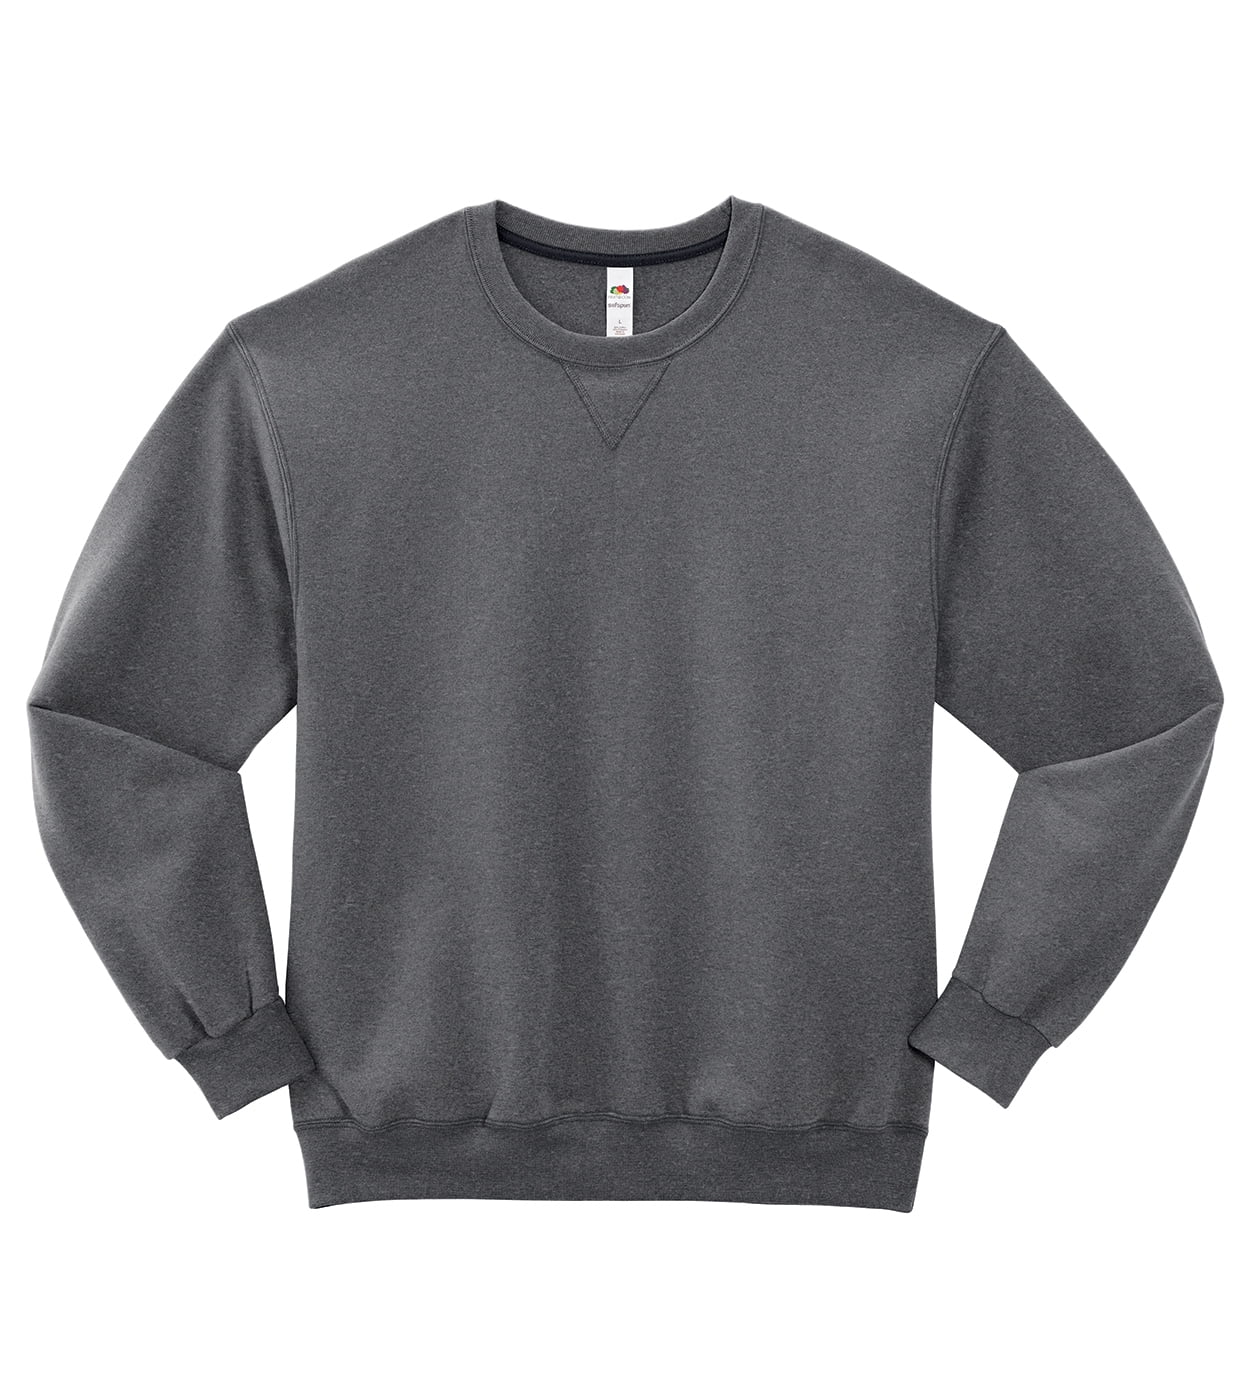 Men's Fleece Crew Sweatshirt - Walmart.com